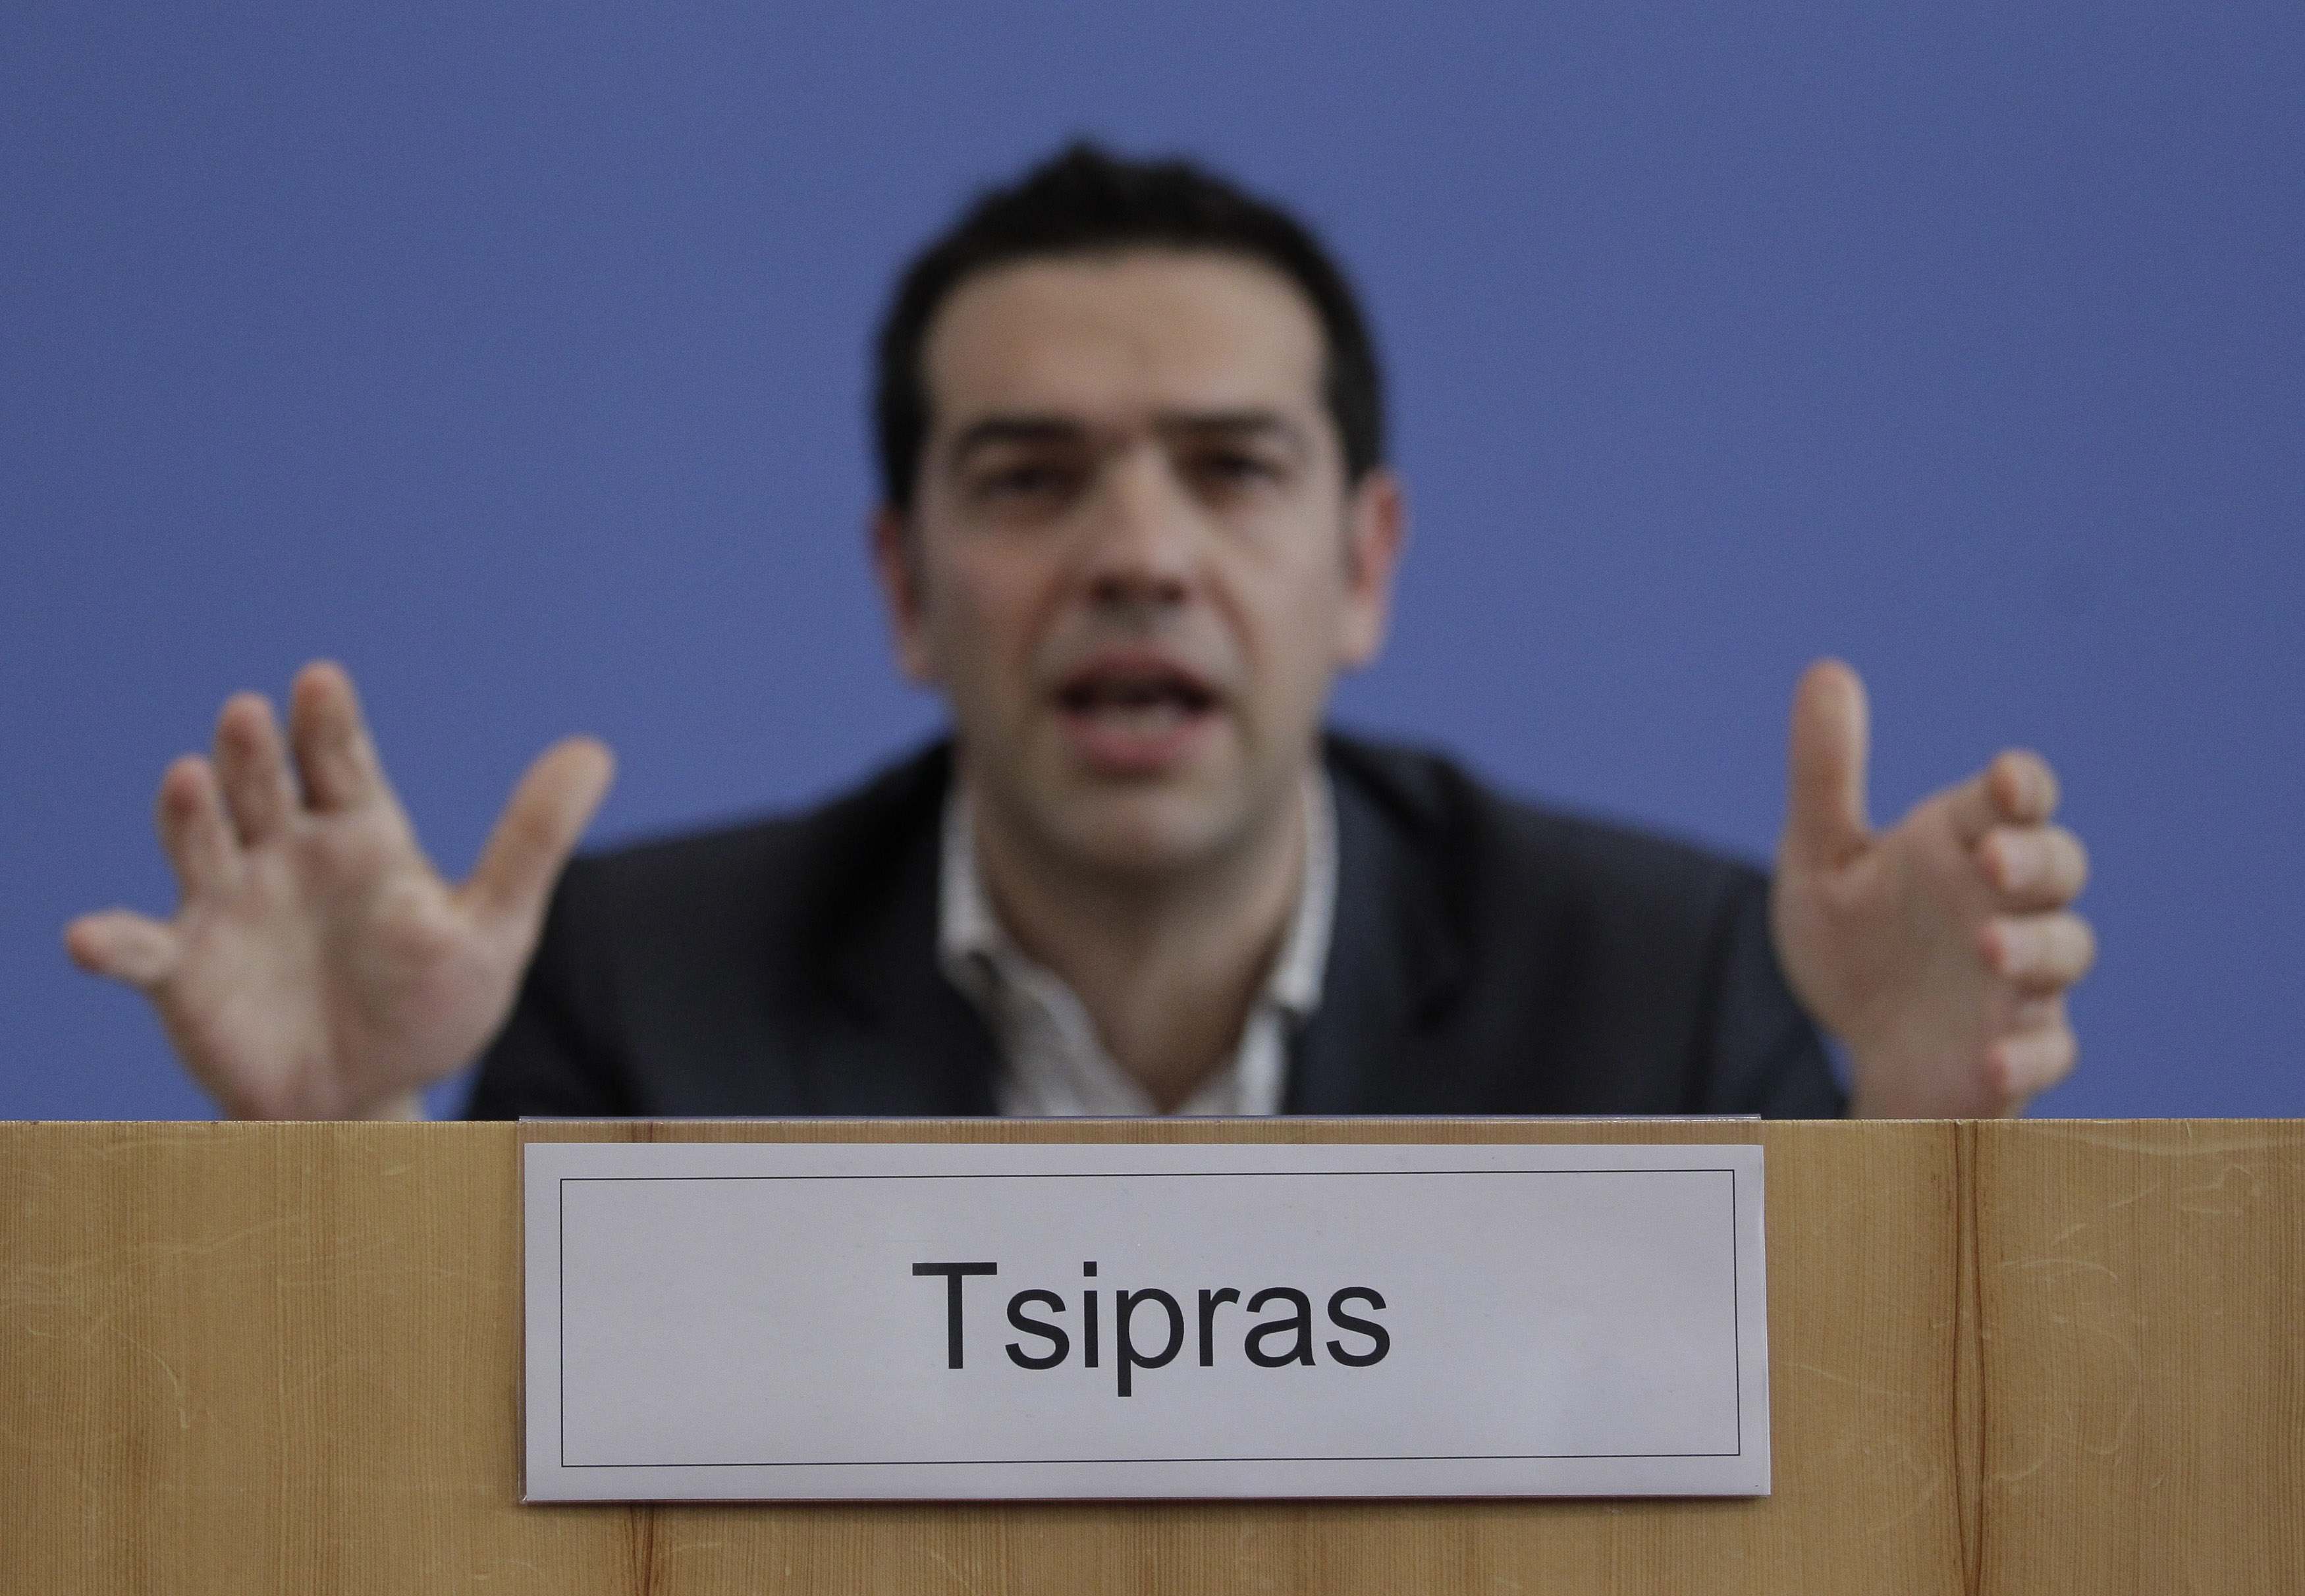 Ώρα 12:00 ανακοινώνεται το οικονομικό πρόγραμμα του ΣΥΡΙΖΑ – Όλες οι πληροφορίες για τα μέτρα που θα ανακοινωθούν